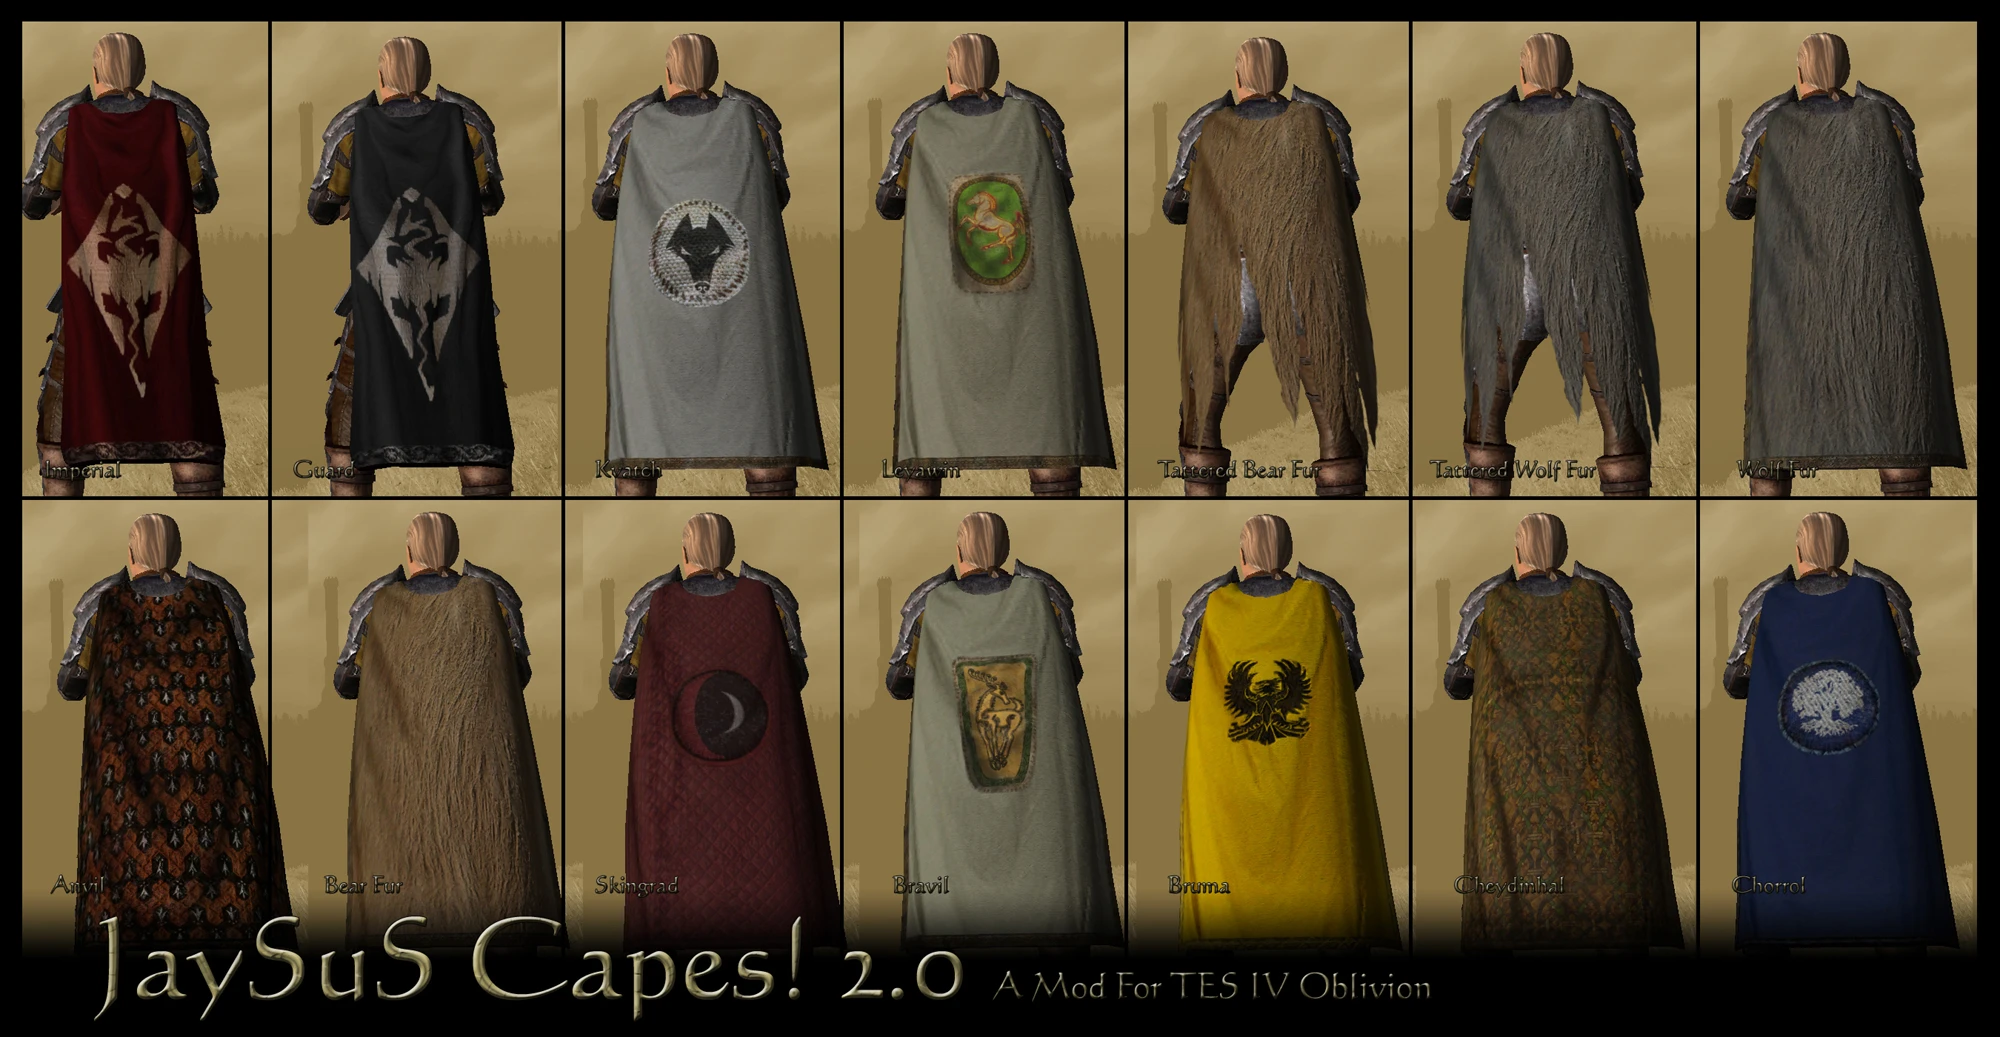 skyrim cloaks and capes steam